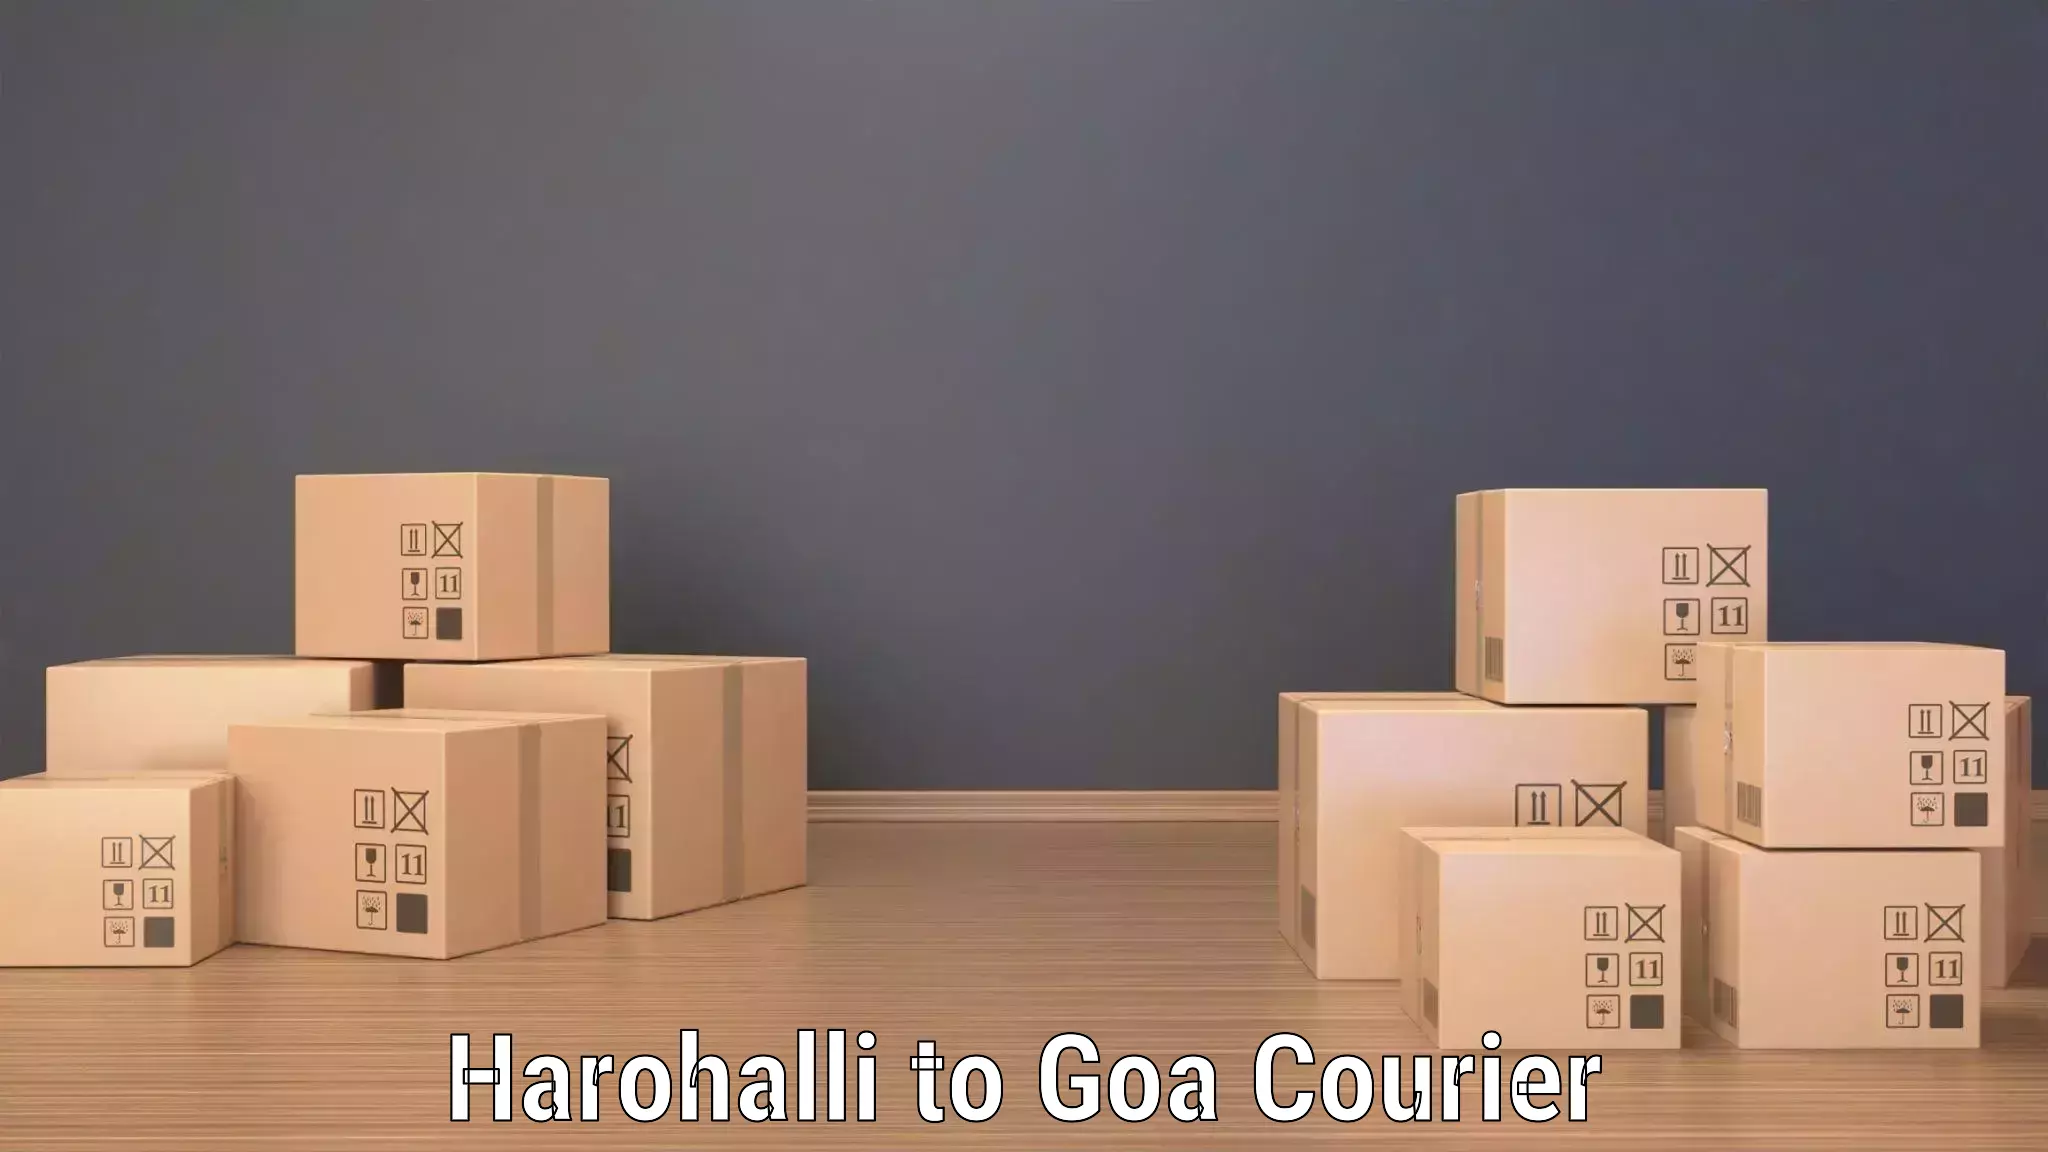 Enhanced tracking features Harohalli to Goa